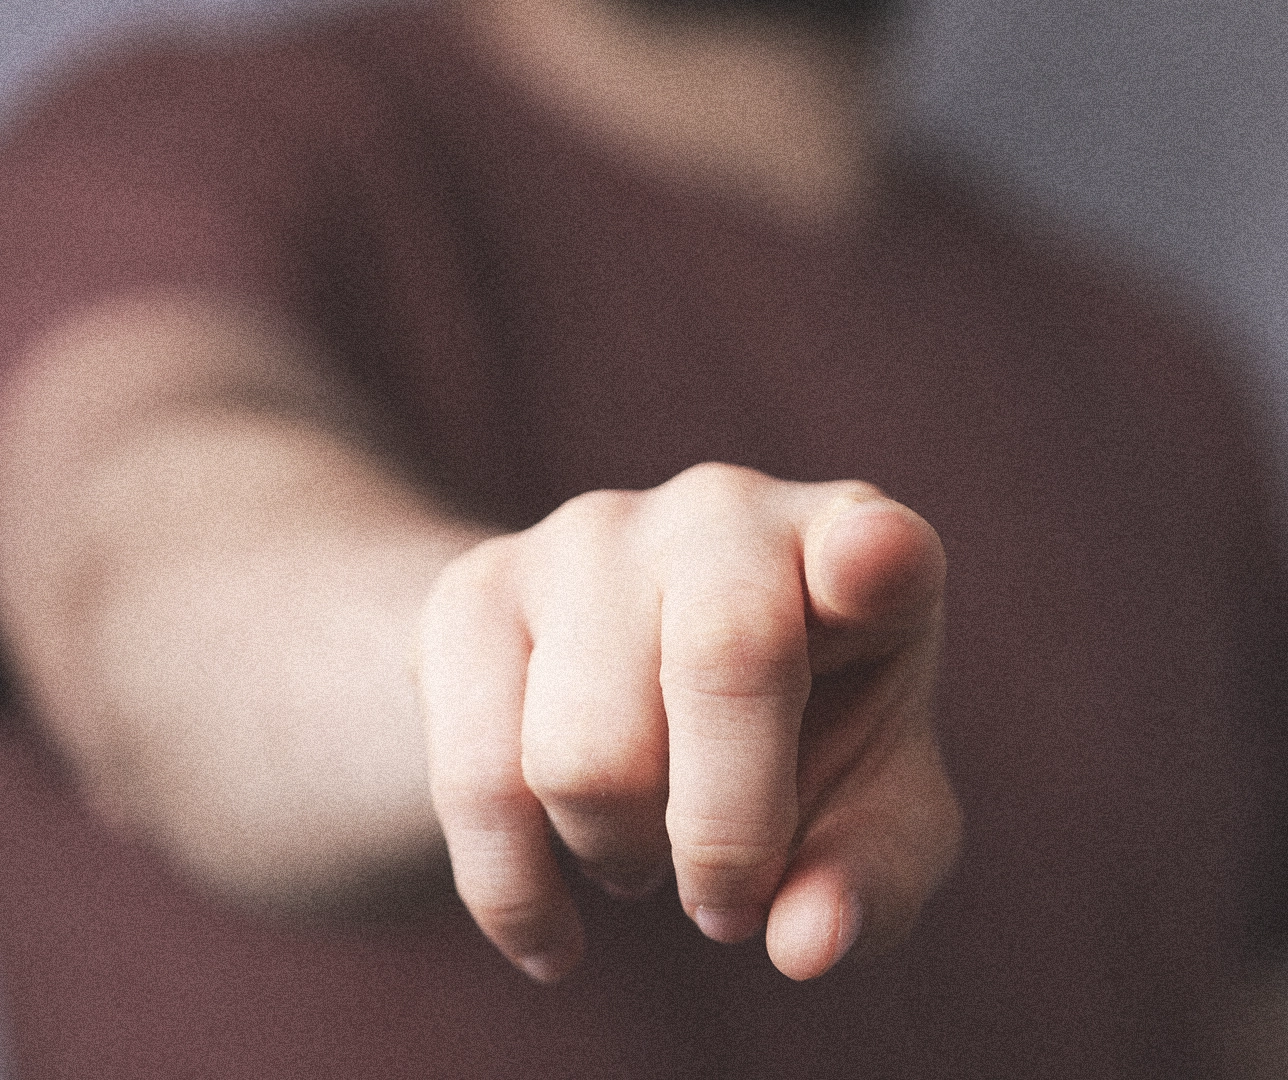 Una persona apuntando con su dedo en modo amenaza.